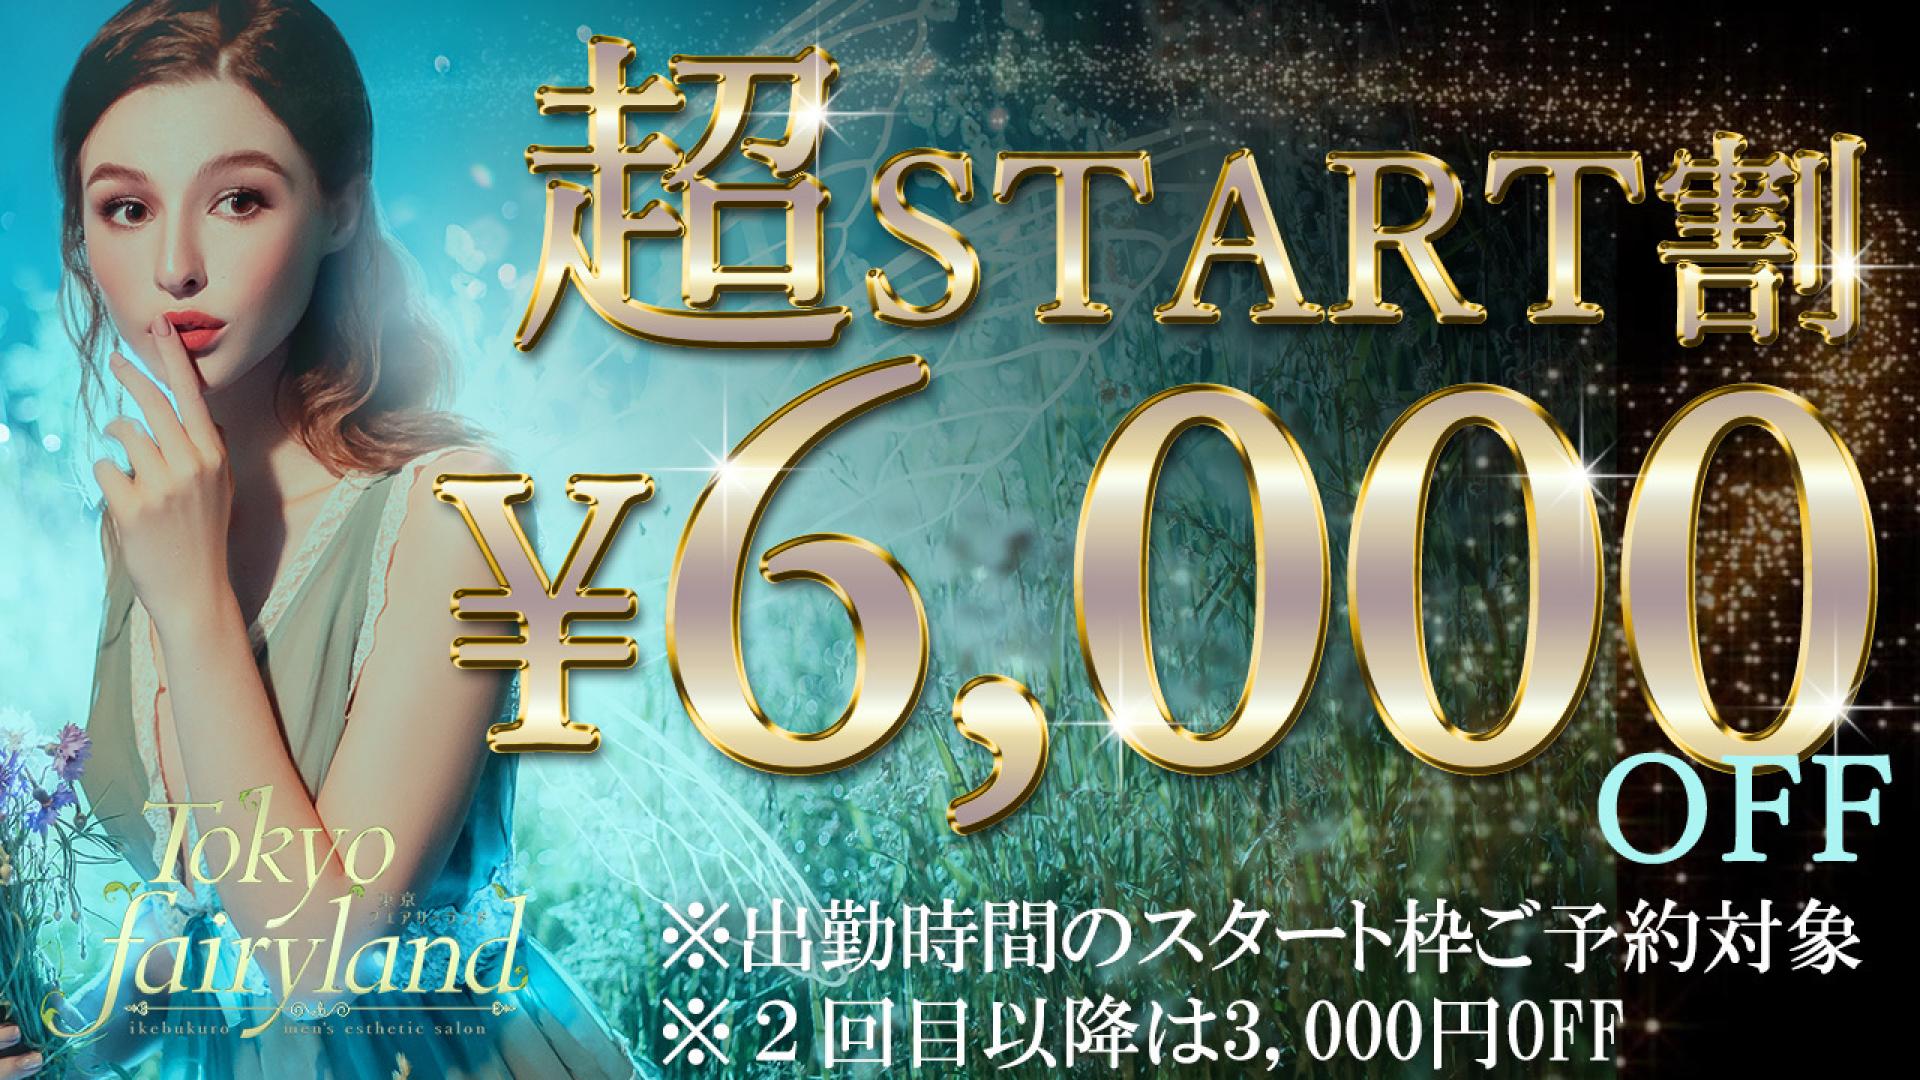 【割引情報】START割引初回¥6000円OFF※セラピストにより異なる場合がございます。